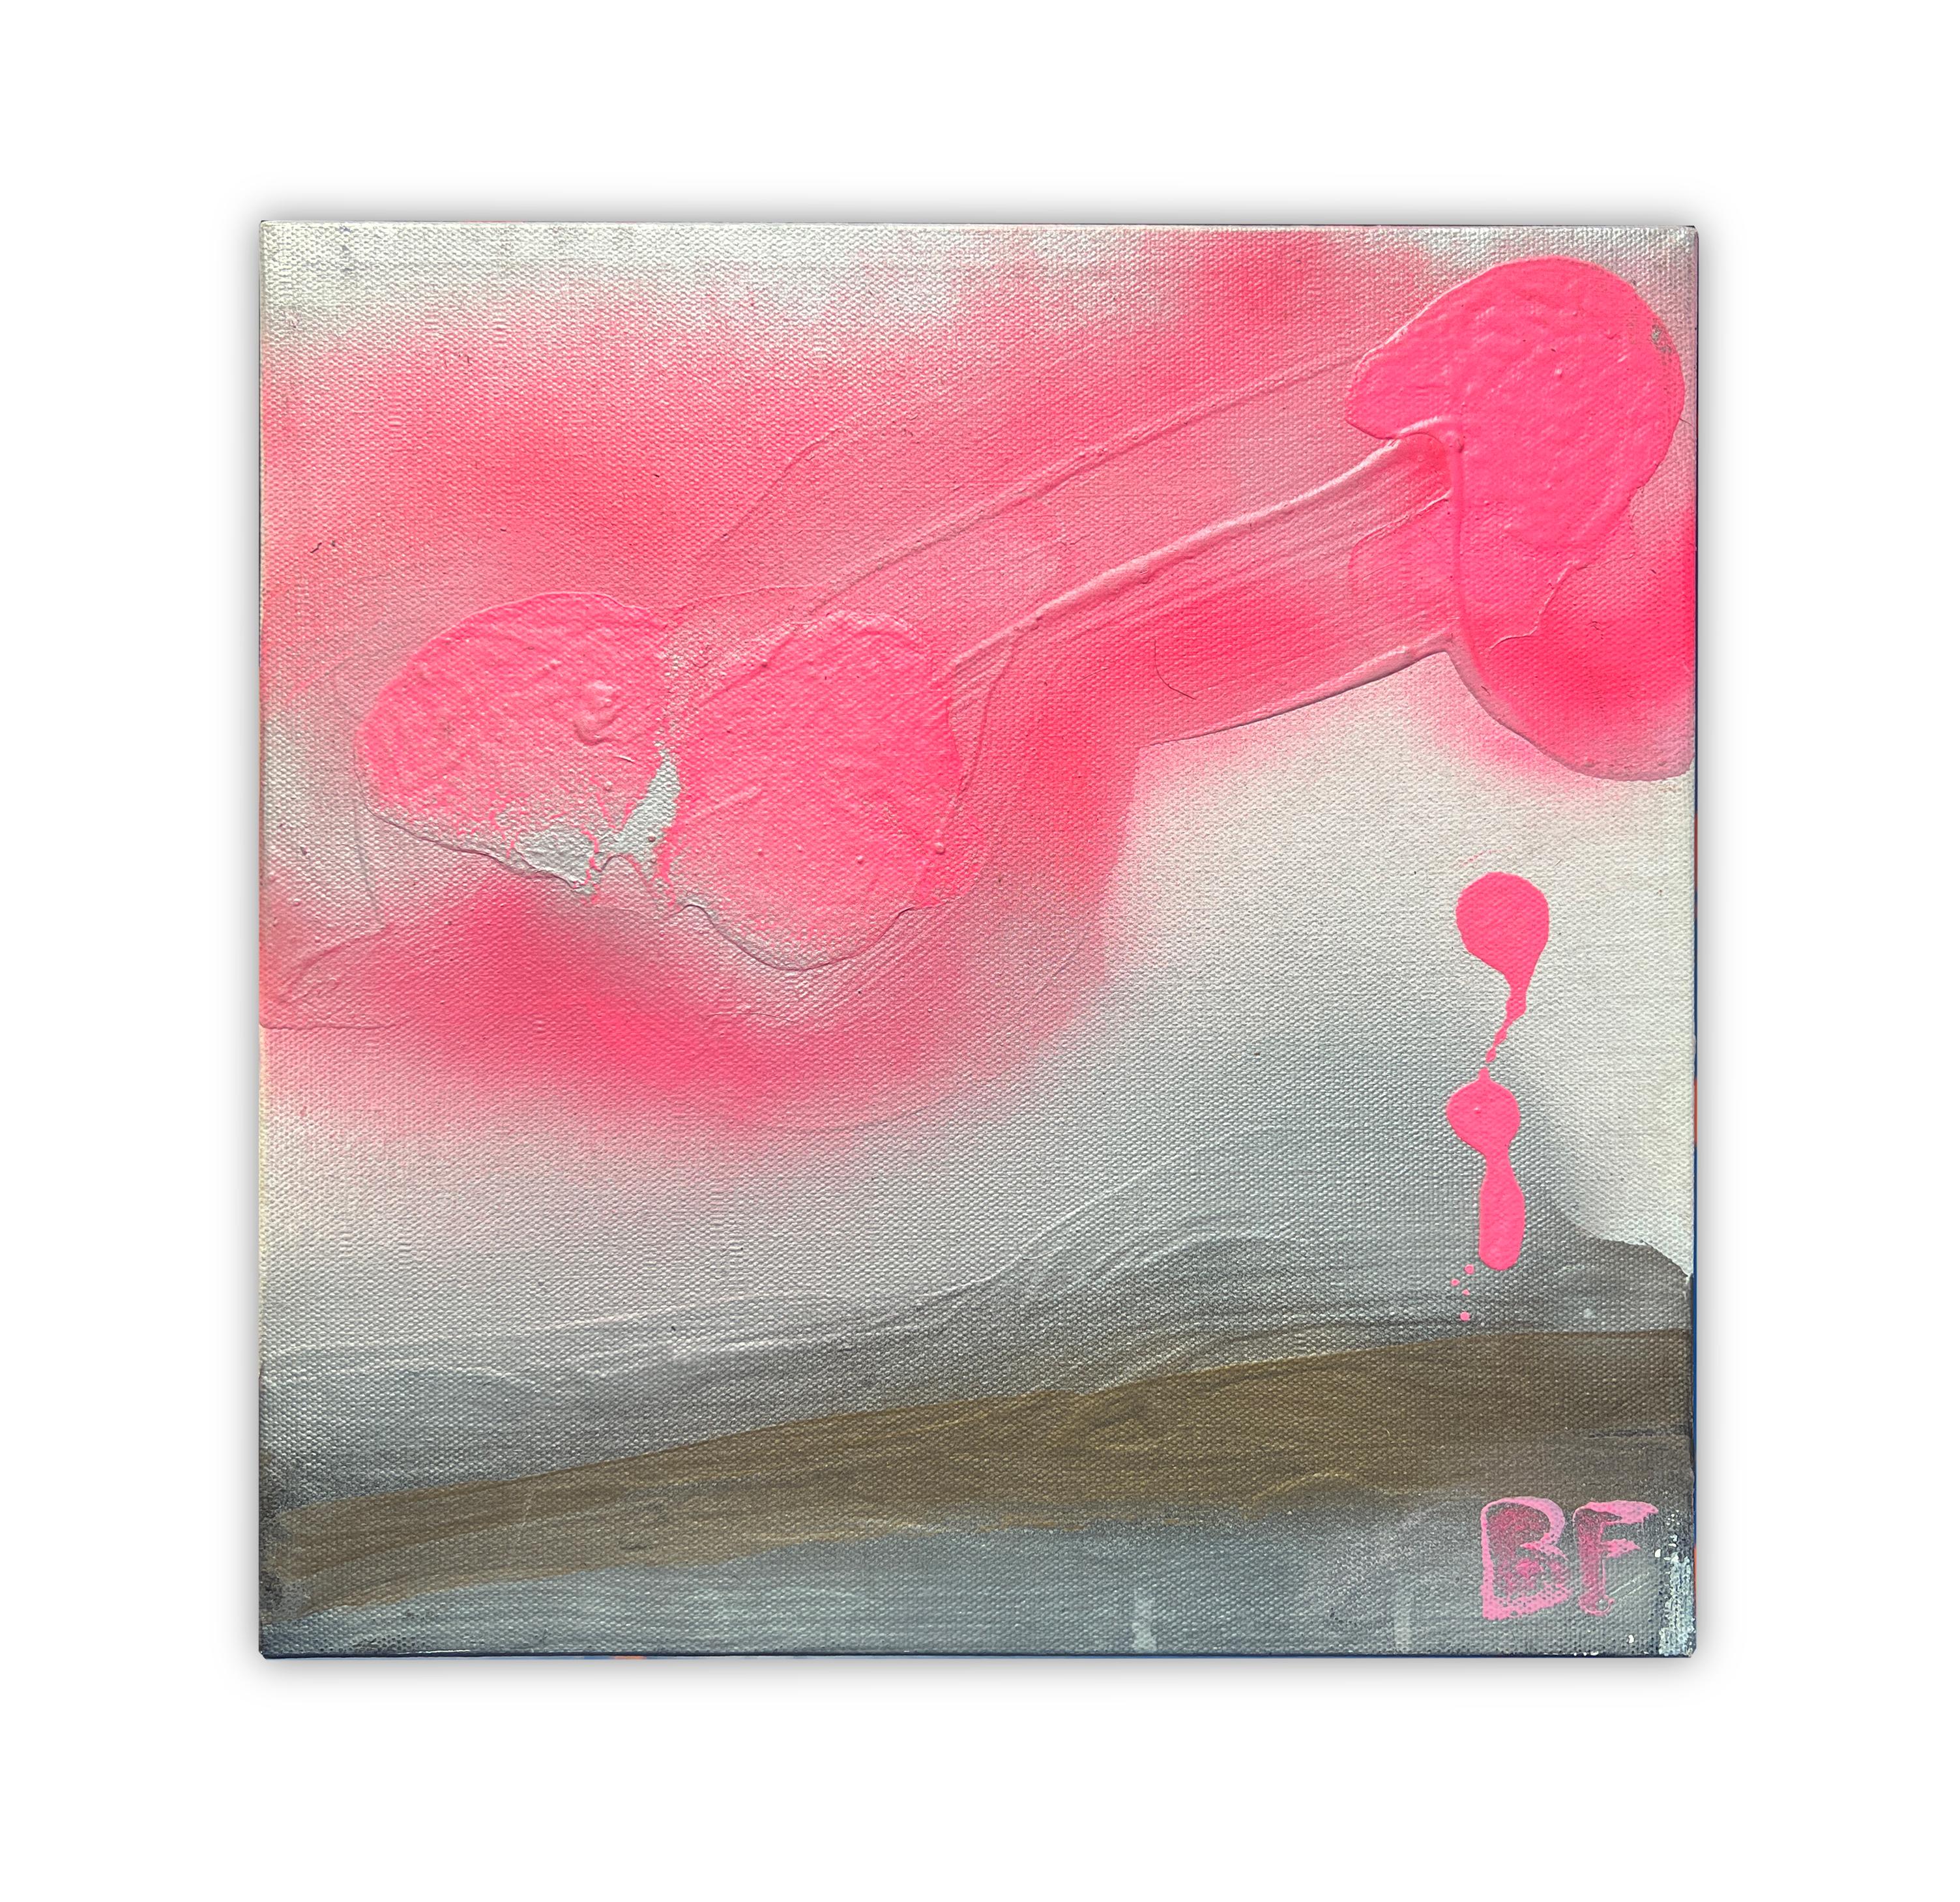 Petits nuages roses I, par Brad Fisher 

Acrylique et peinture en aérosol à l'éclat du jour sur toile

12 X 12 po.

L'expédition n'est pas incluse. Voir nos politiques d'expédition. Veuillez nous contacter pour obtenir un devis d'expédition et des